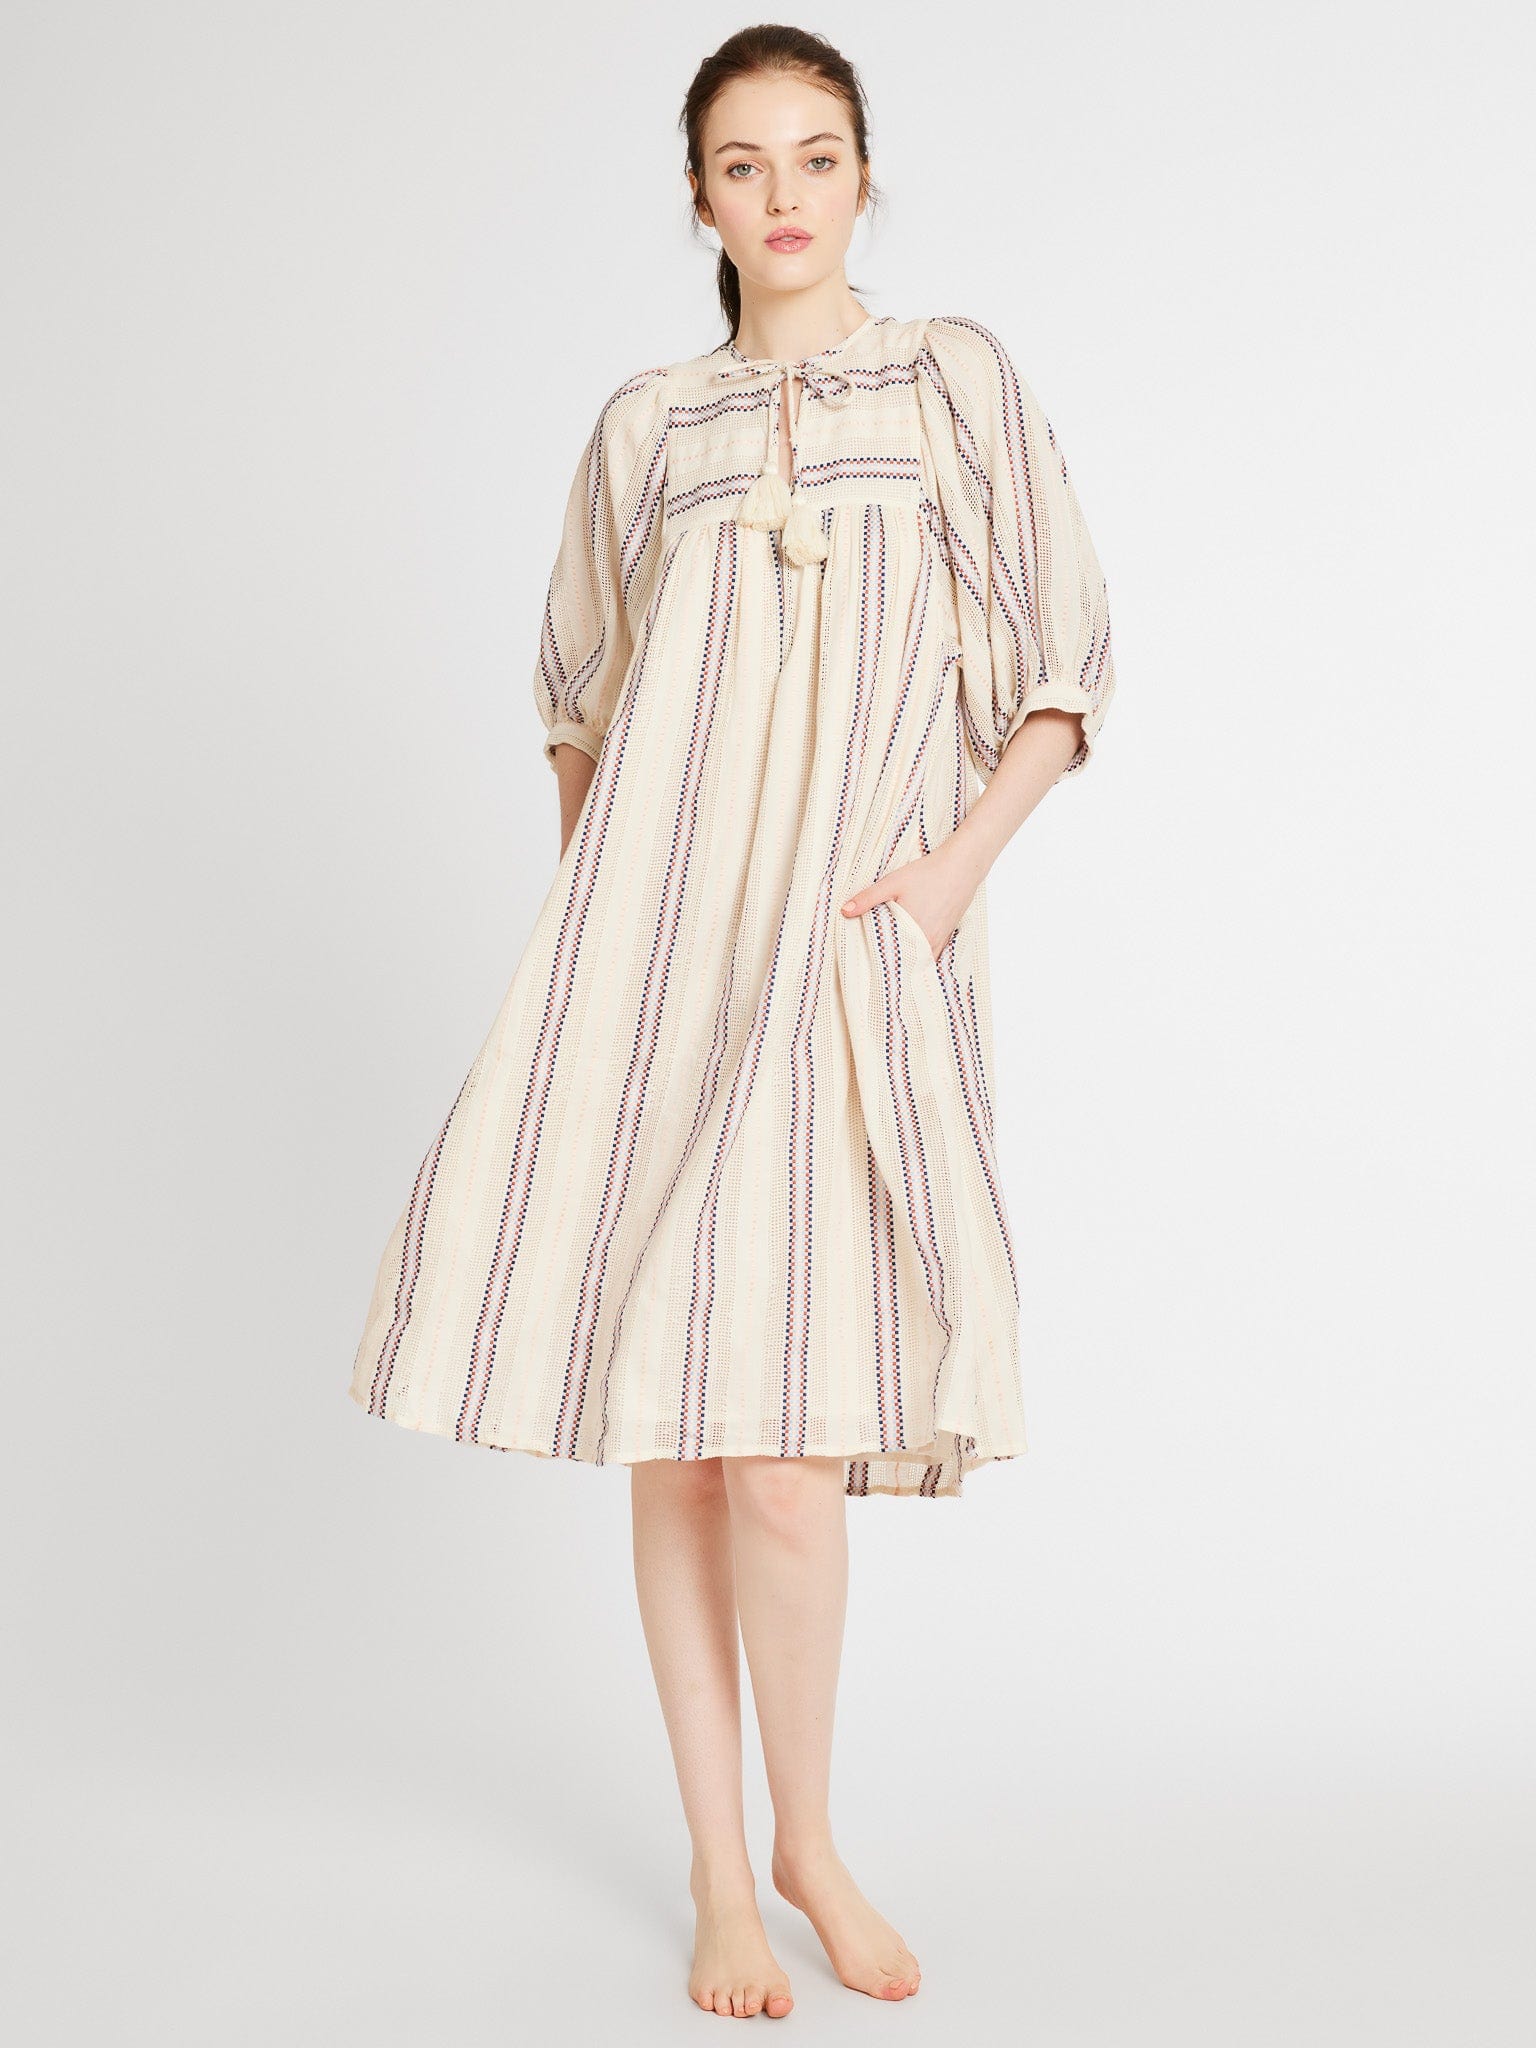 MILLE Clothing Saffron Dress in O&#39;Keeffe Stripe